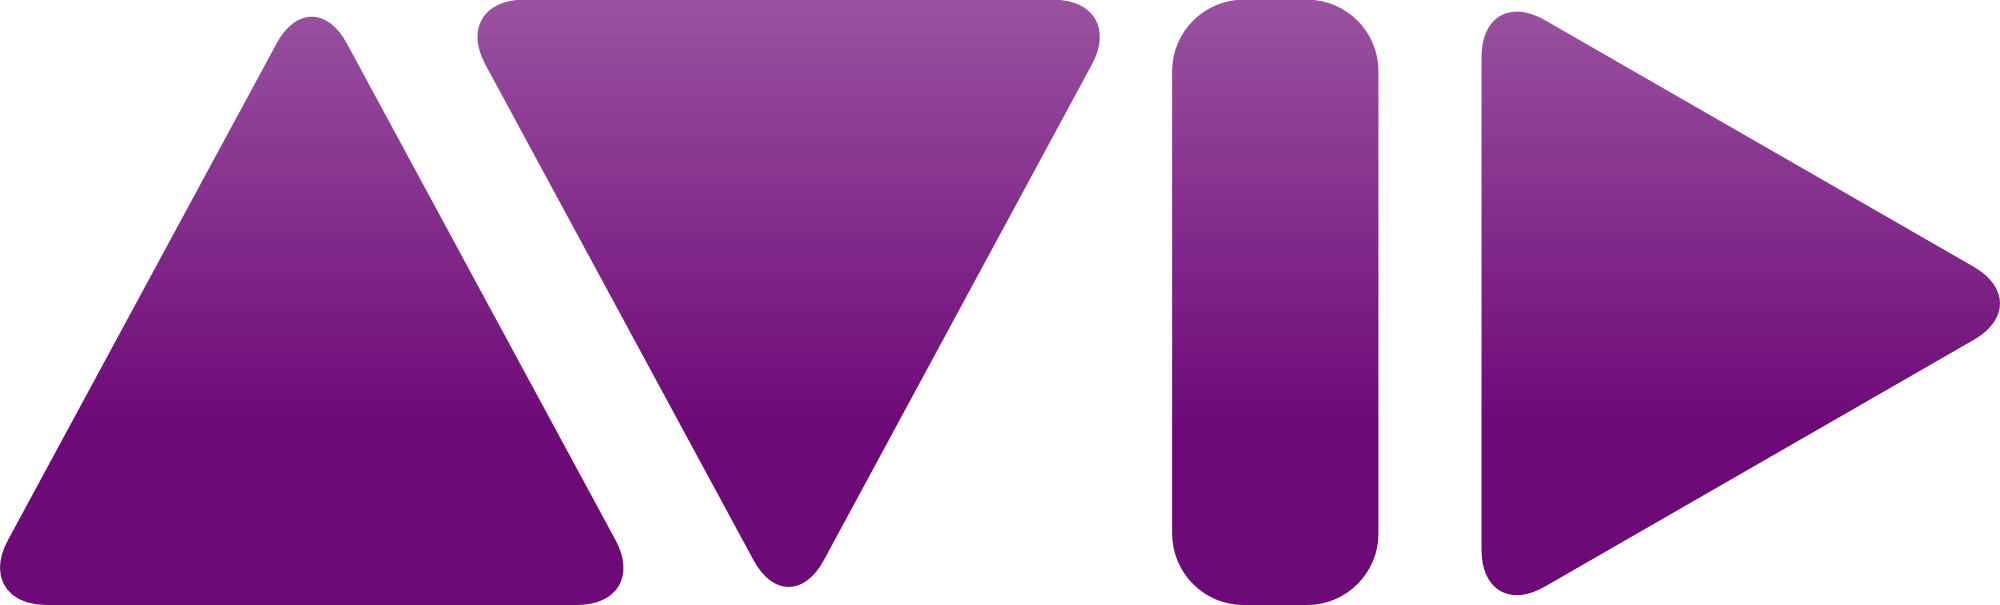 Avid-Logo1.png